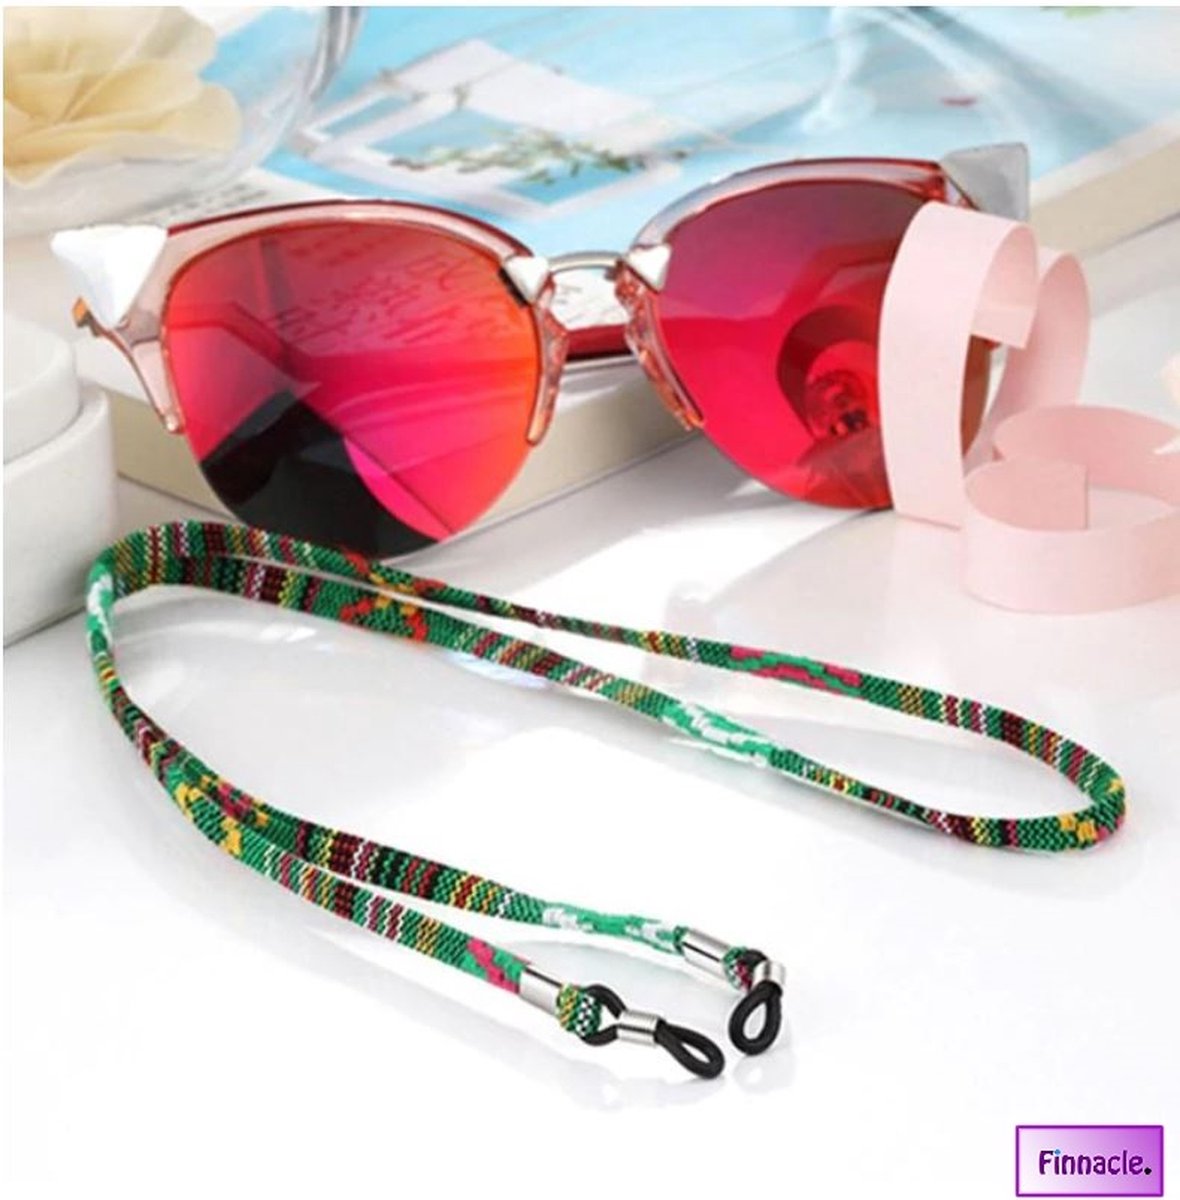 Finnacle - Brillenkoord Groen Geel Rood Zonnebril Katoen Strap Eyewear Touw Brilketting multikleur